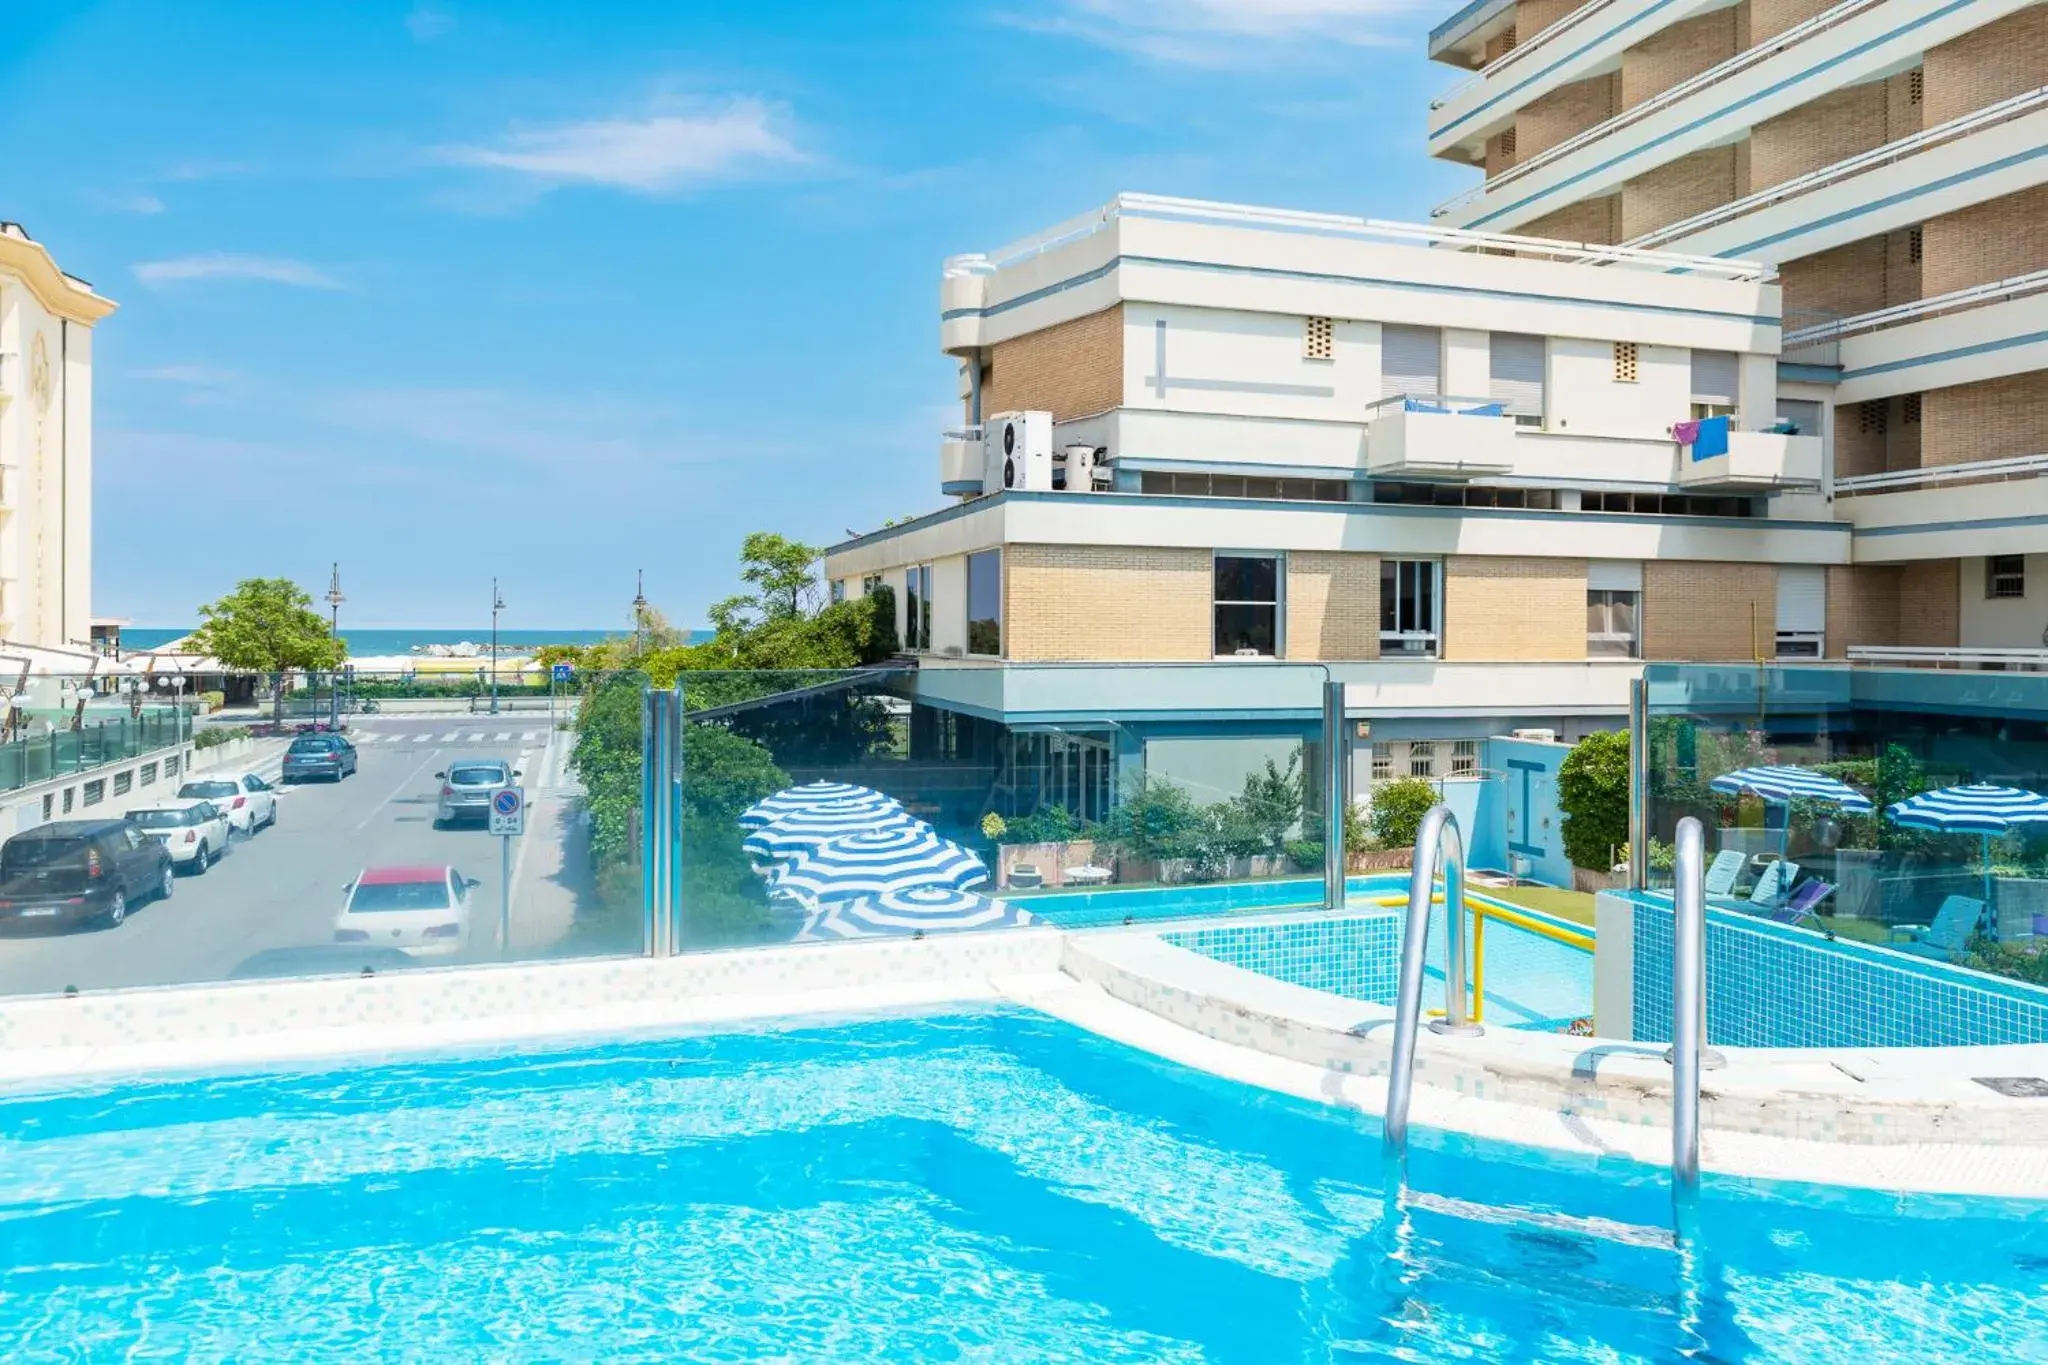 Swimming Pool in Hotel Caesar